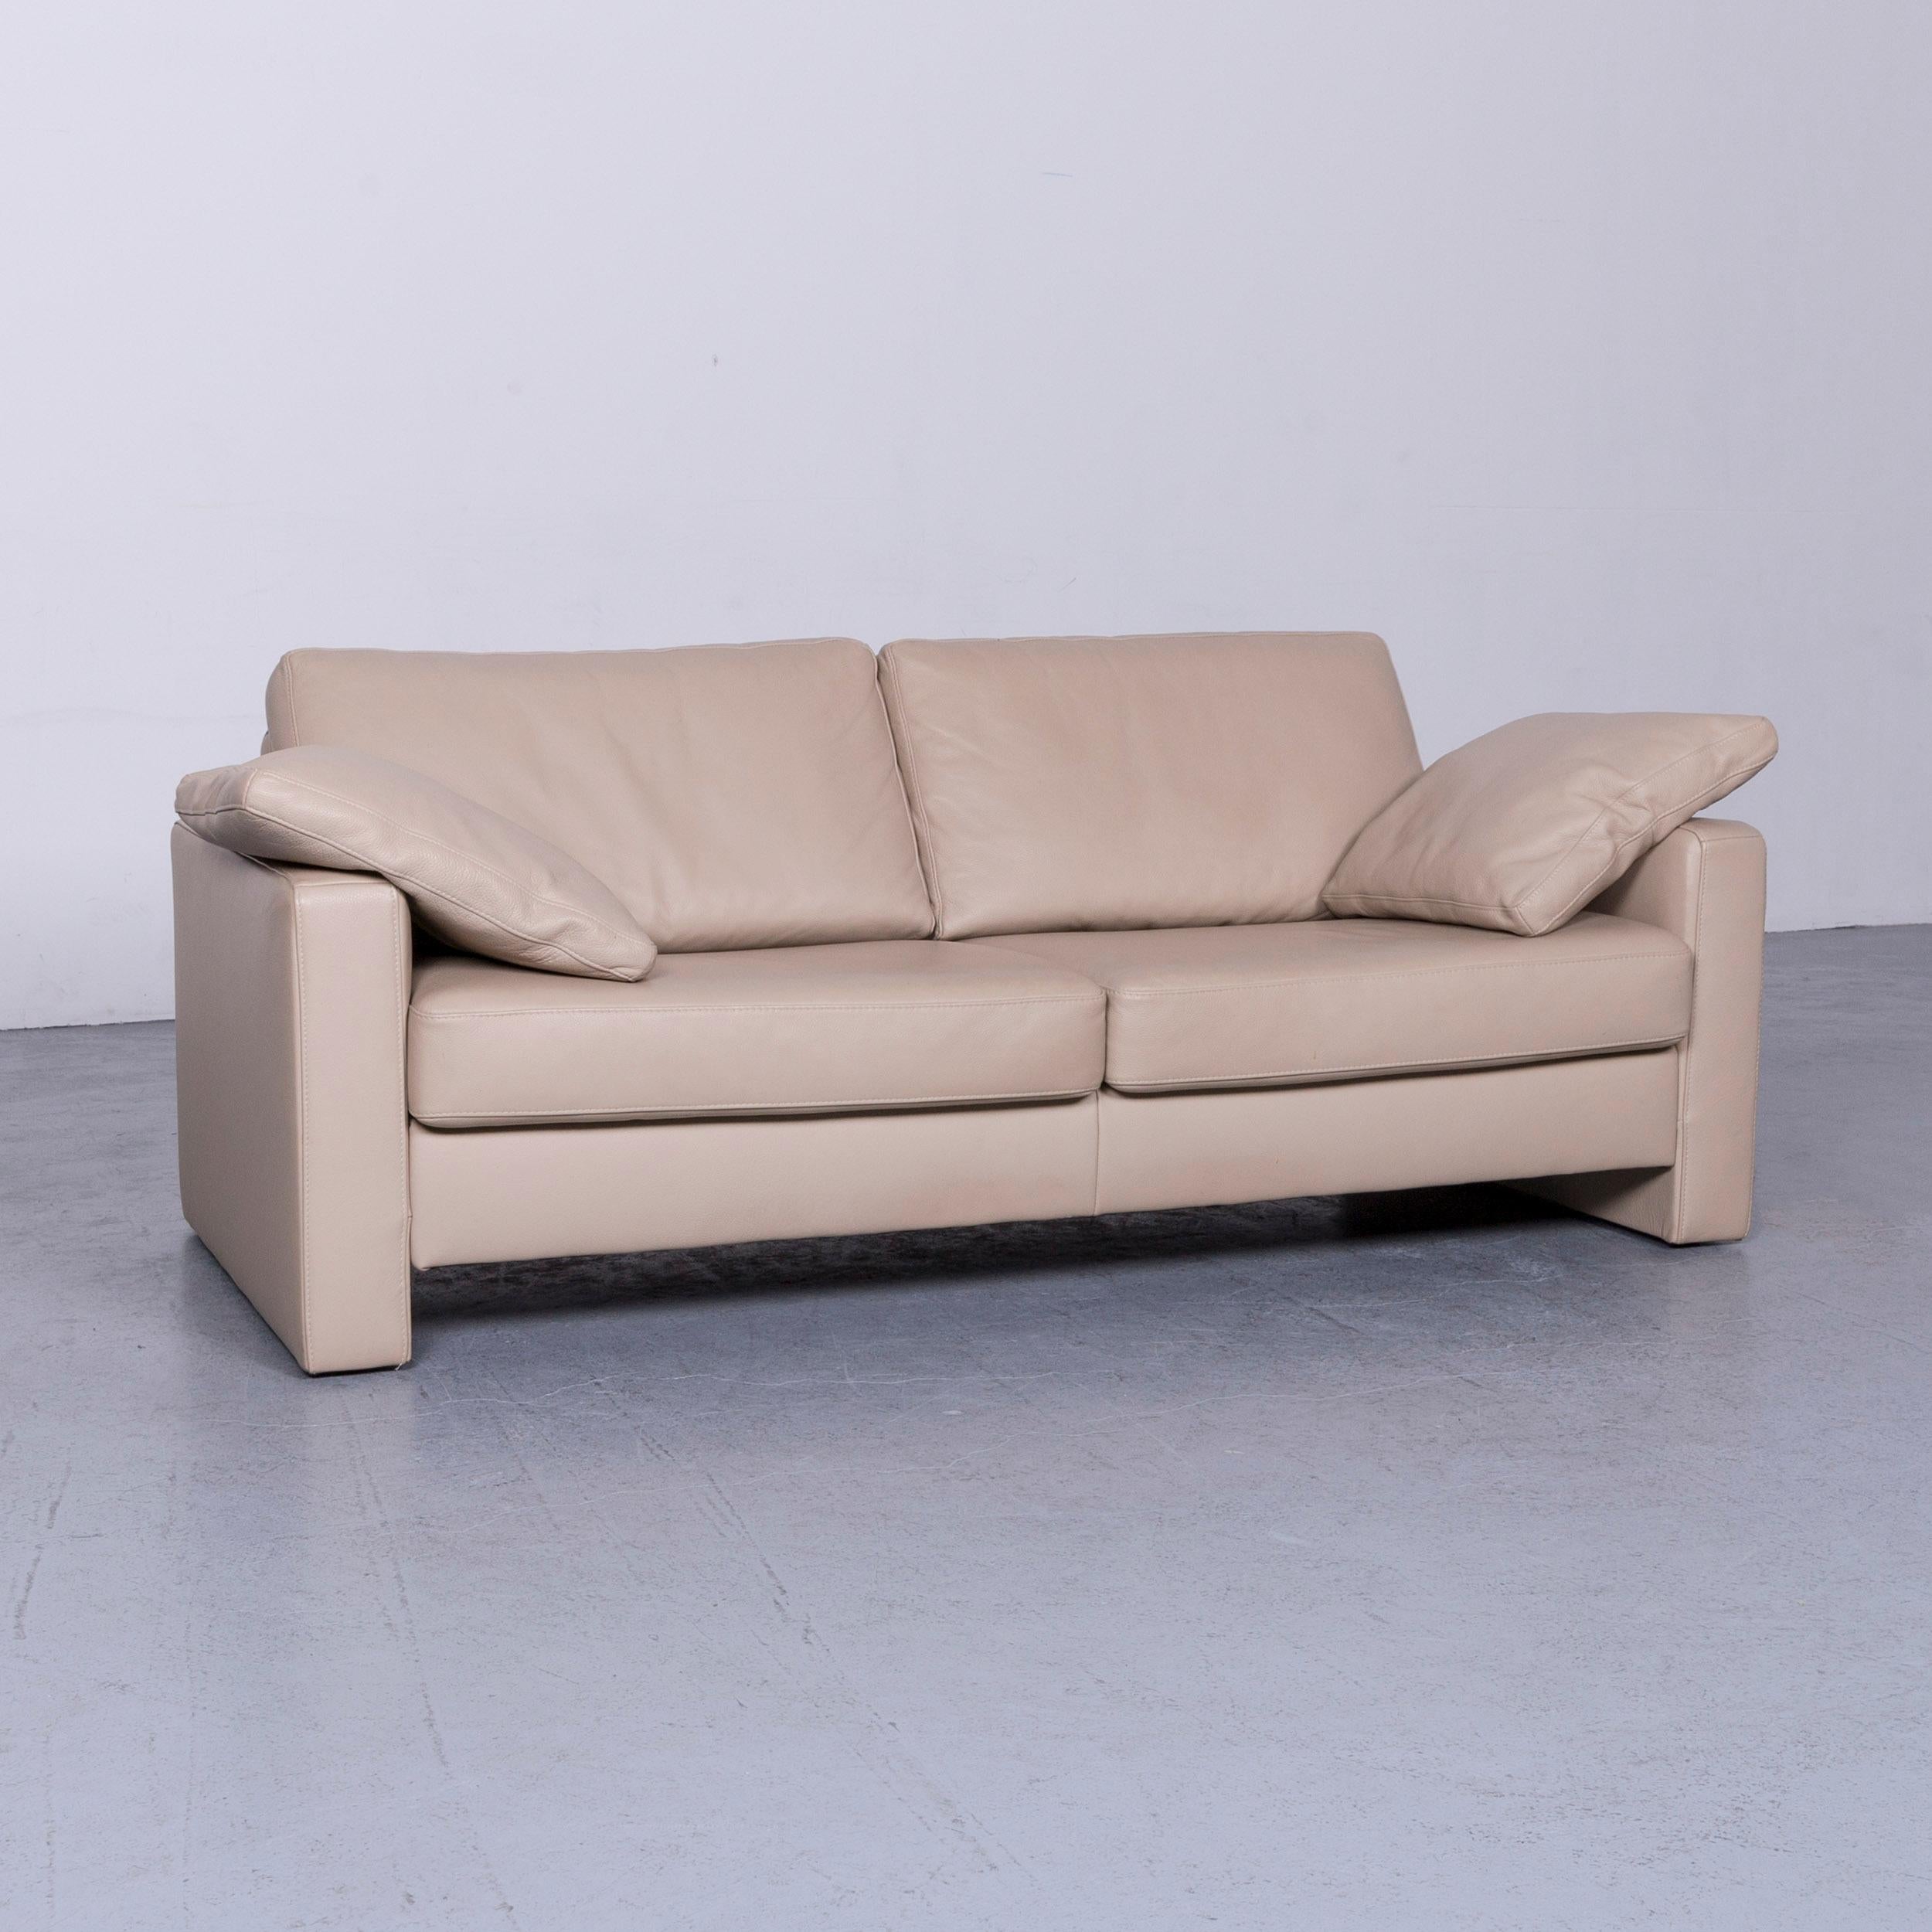 German Ewald Schillig Designer Leather Sofa Armchair Set Brown Beige Two-Seat